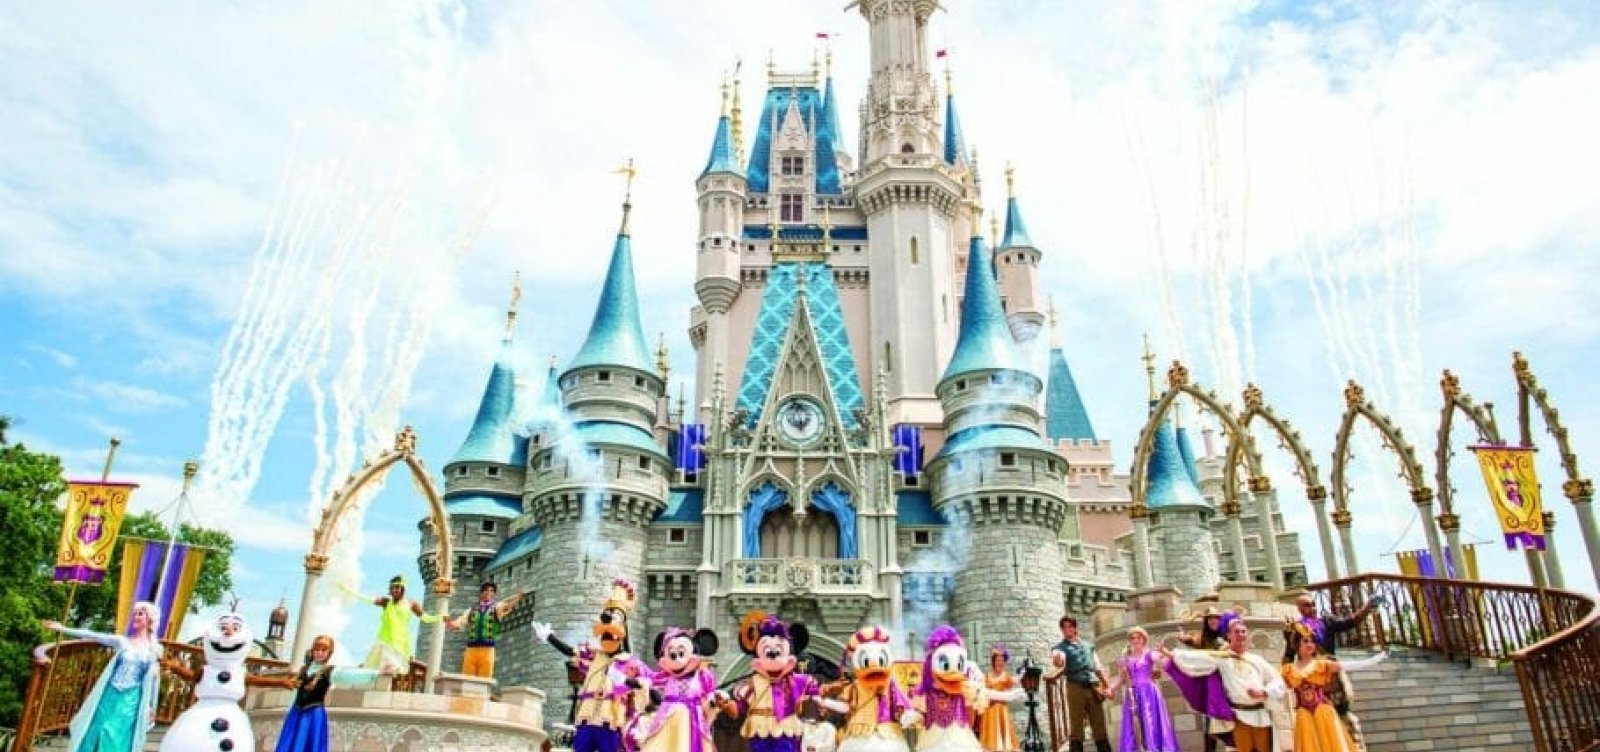 Funcionários da Disney fazem protesto e ameaçam greve: "Mickey ia querer um salário justo"